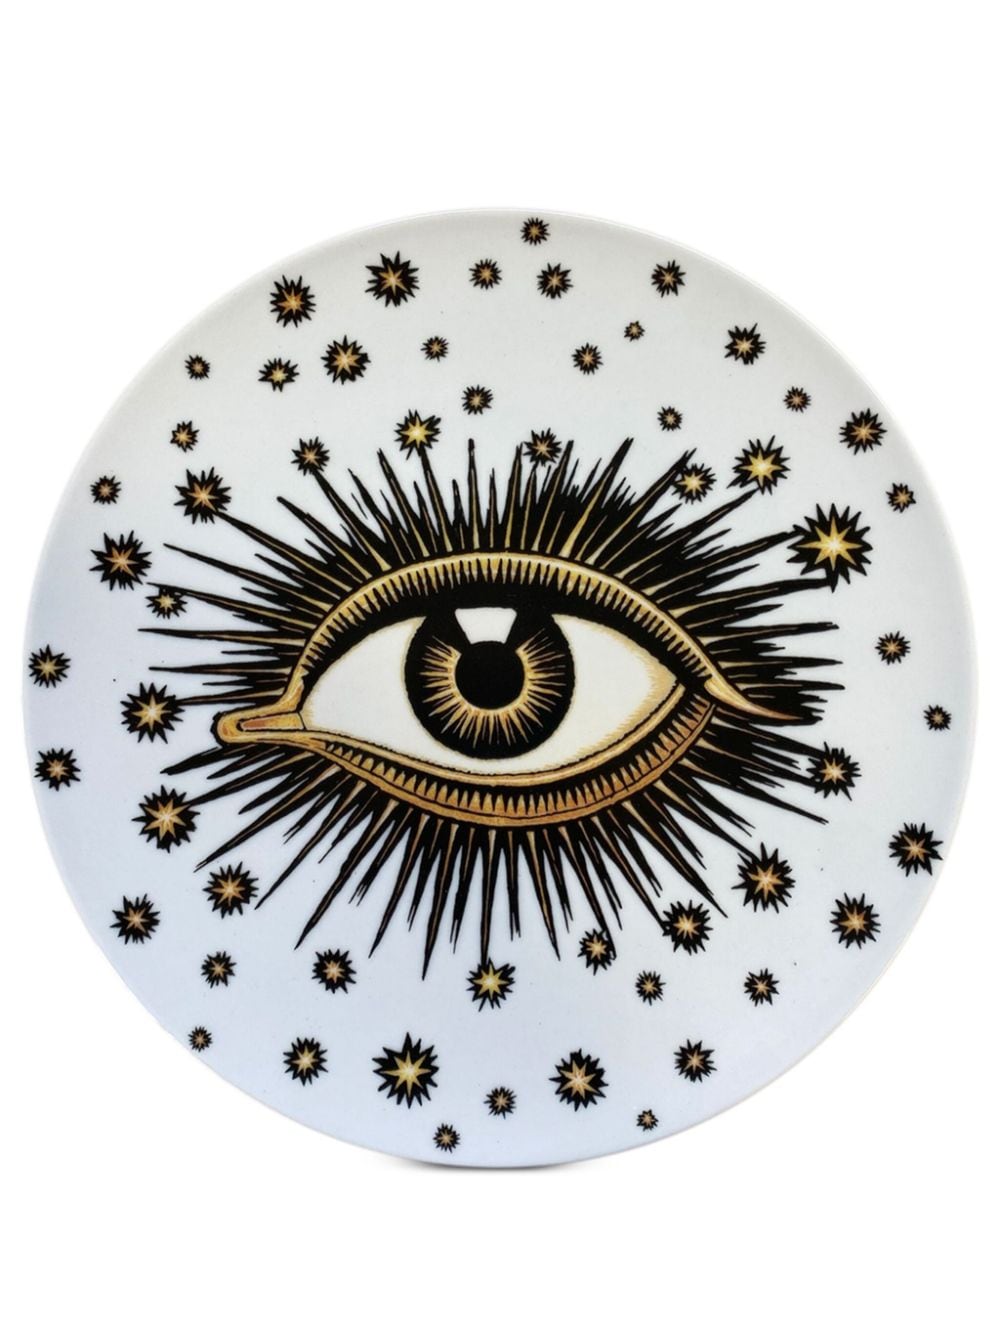 Les-ottomans Eye Porcelain Dinner Plate (27cm) In White